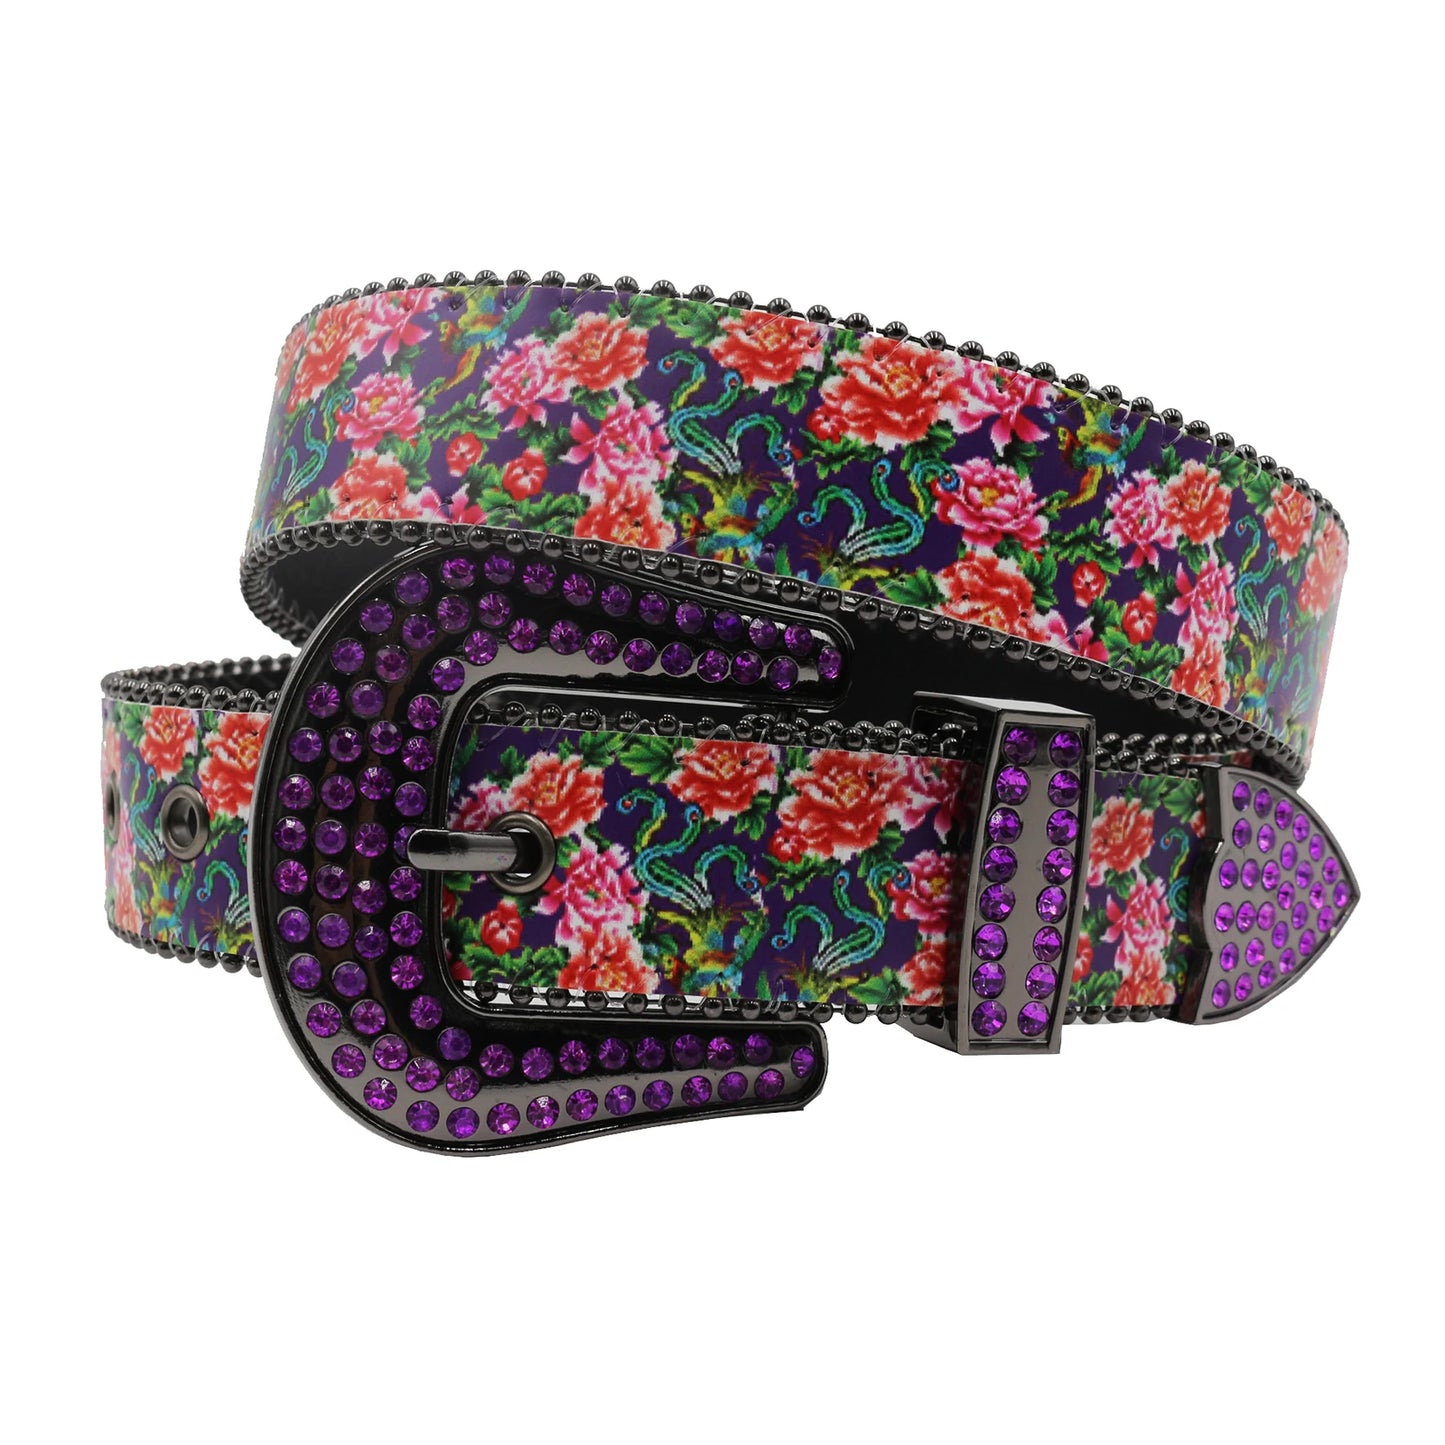 TEEK - Flower Print Belts BELT theteekdotcom MDH-Purple 115cm/45.28in 